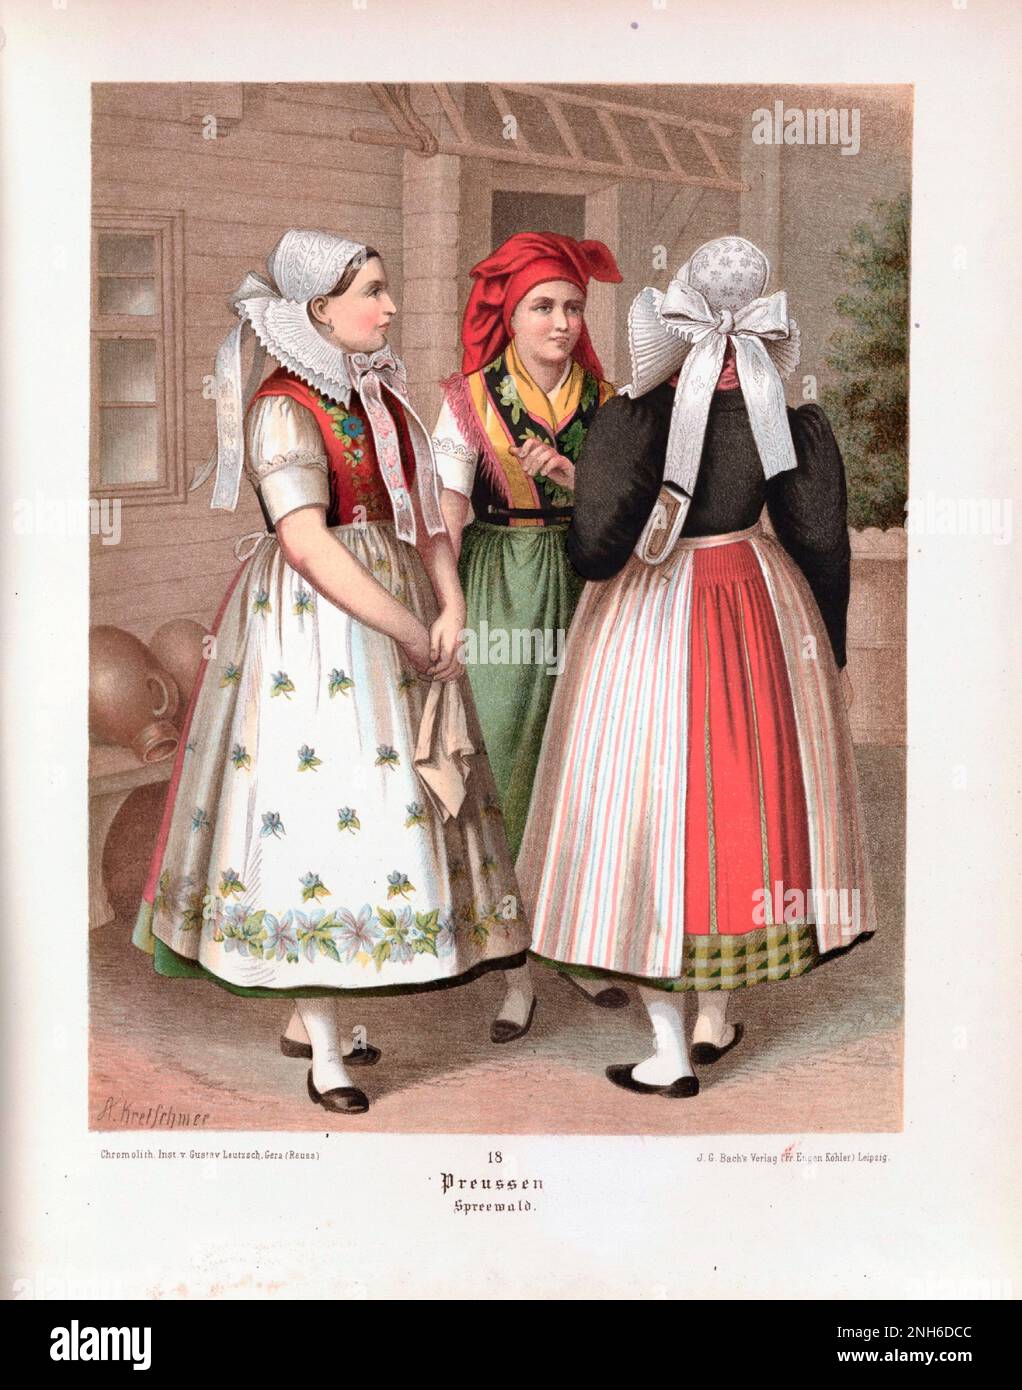 Disfraz folclórico alemán. Prusia (Germ. Preussen), Spreewald. litografía del siglo 19th. Foto de stock